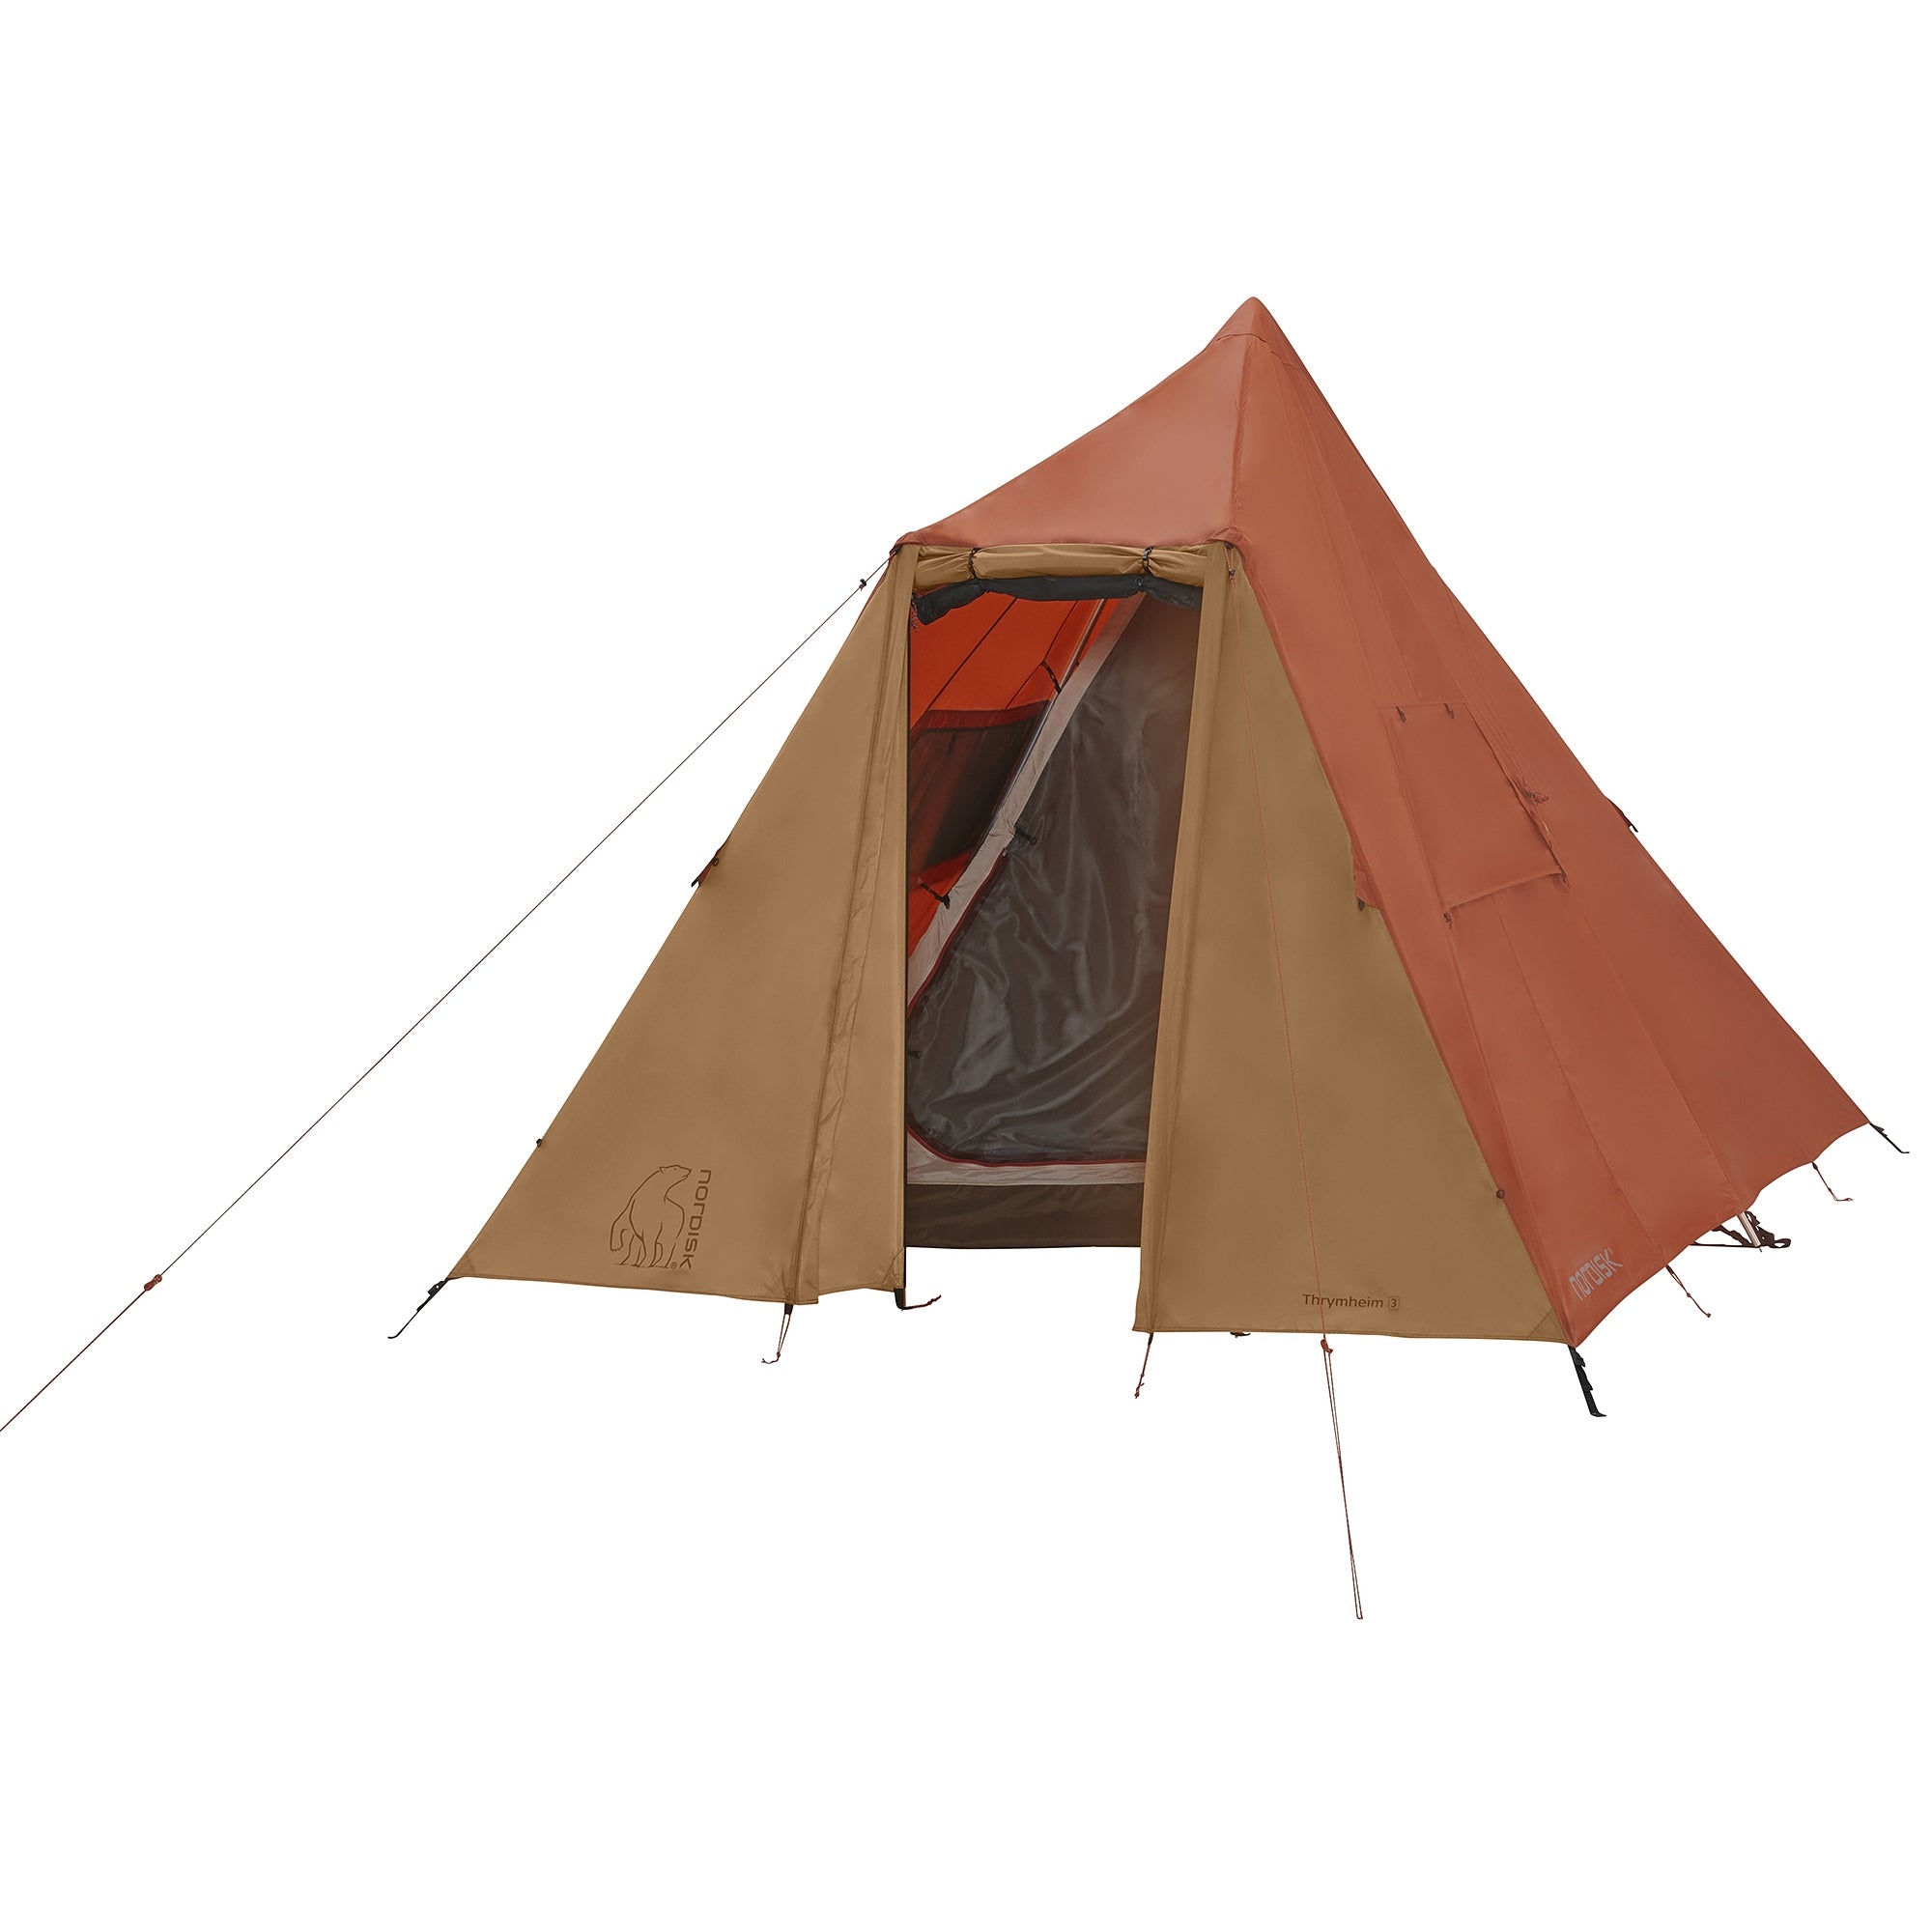 ノルディスク NORDISK Thrymheim 3 PU Tent 122055 テント │Z-CRAFT 